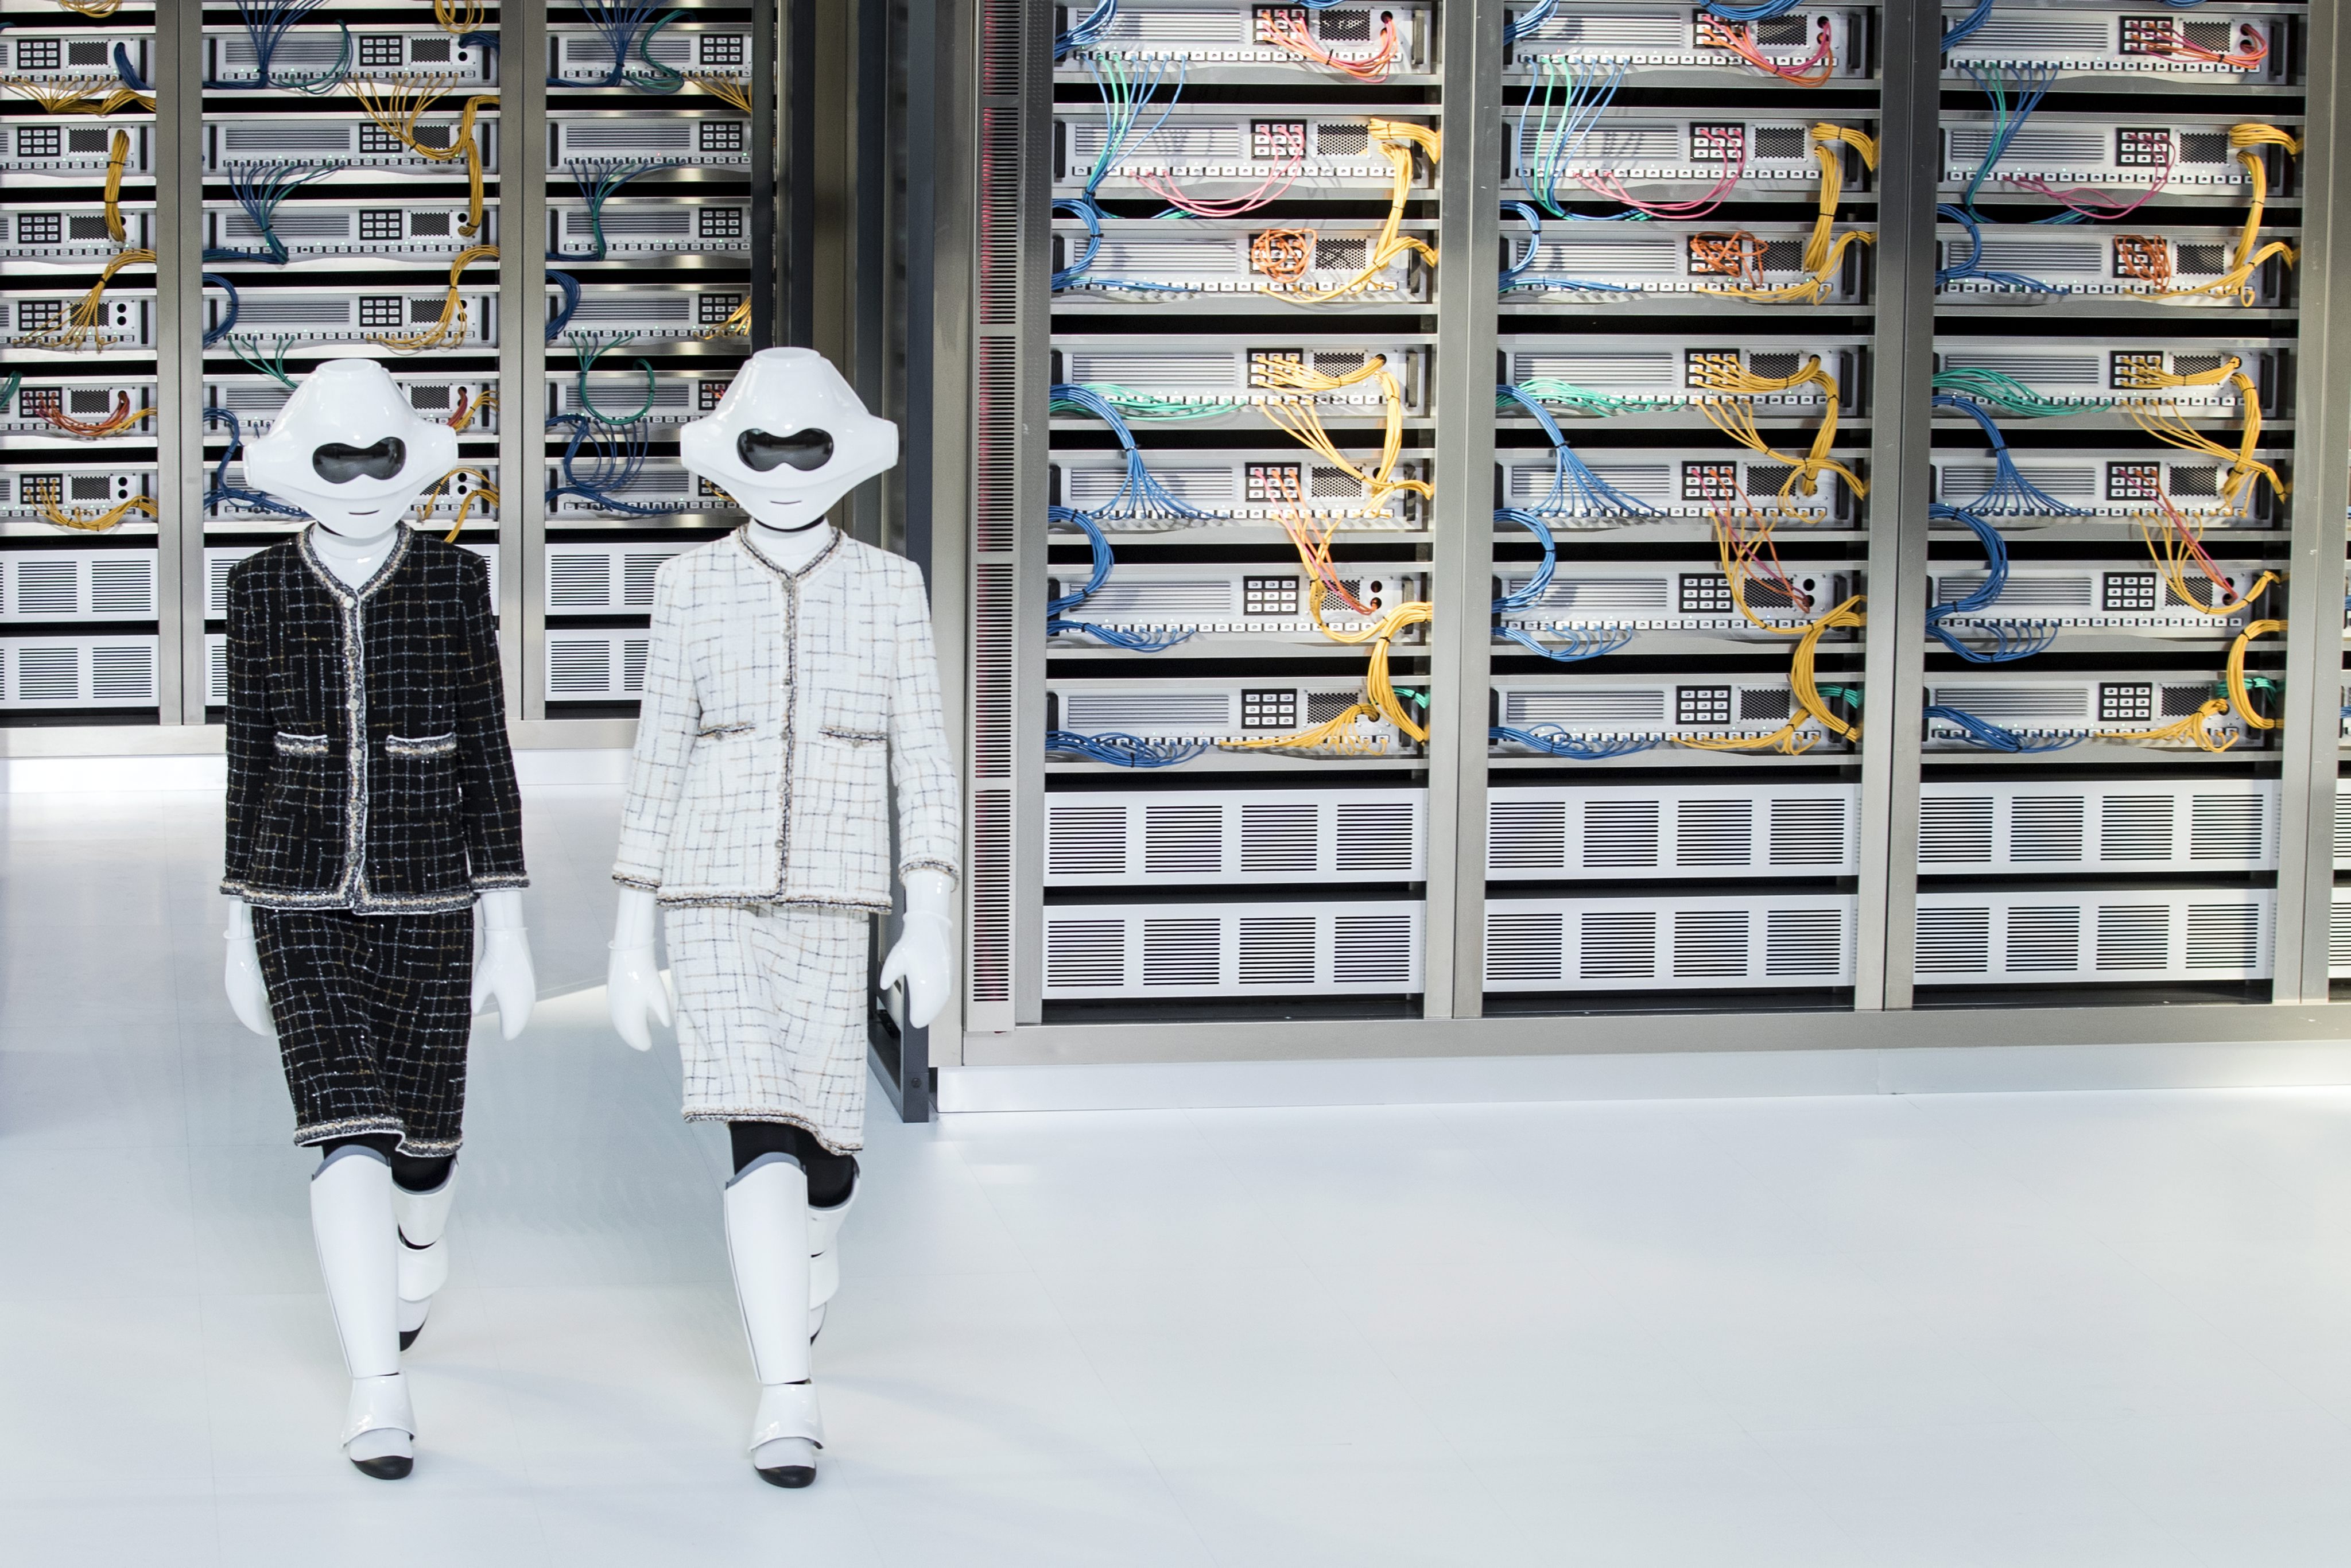 Екрани, електронно оборудване, бели стени и роботи, облечени в костюми тайори на "Шанел". . . Творческият директор на модната къща Карл Лагерфелд представи колекция, посветена тематично на "интимните технологии", в рамките на Парижката седмица на модата, предаде Франс прес. Колекцията е своеобразно смесване на вдъхновение от високите технологии и луксозно бельо. Дефилето започна с минаване на две манекенки по подиума, които носеха бели каски на главите си и костюми тайори, като по външния си вид приличаха на робота хуманоид Пепър.